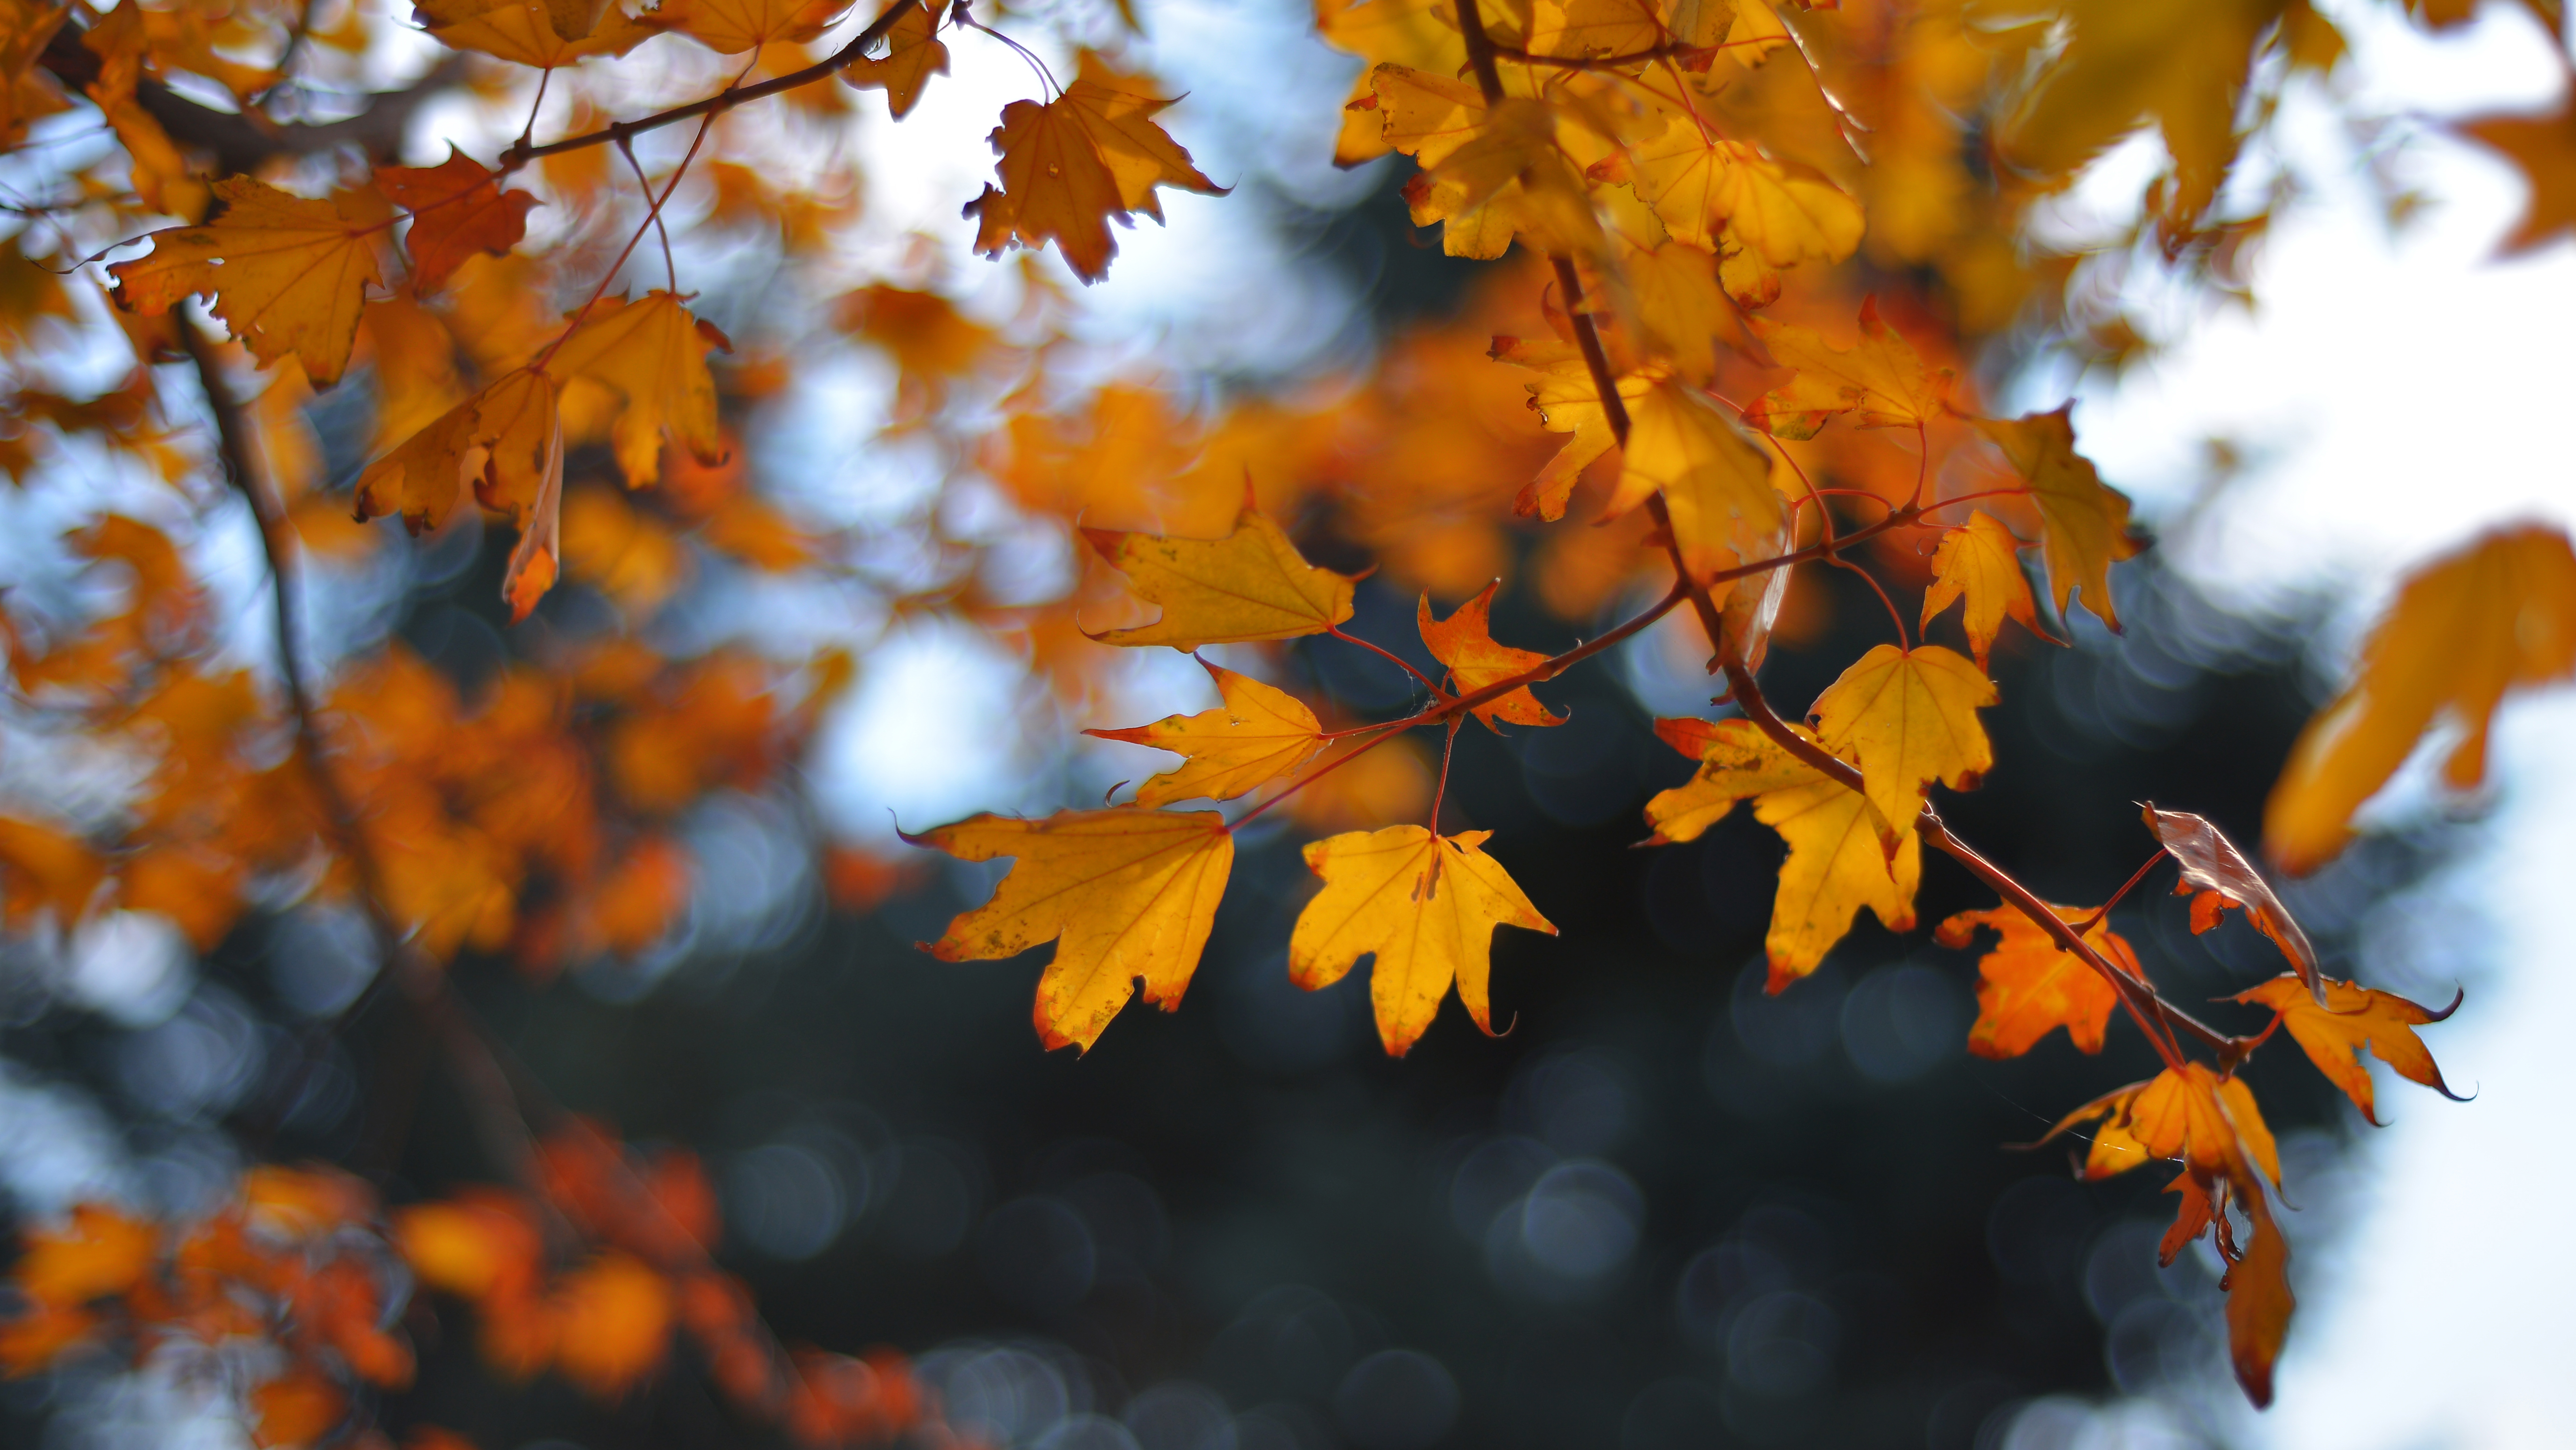 让这个秋天多点色彩 秋叶摄影攻略大放送